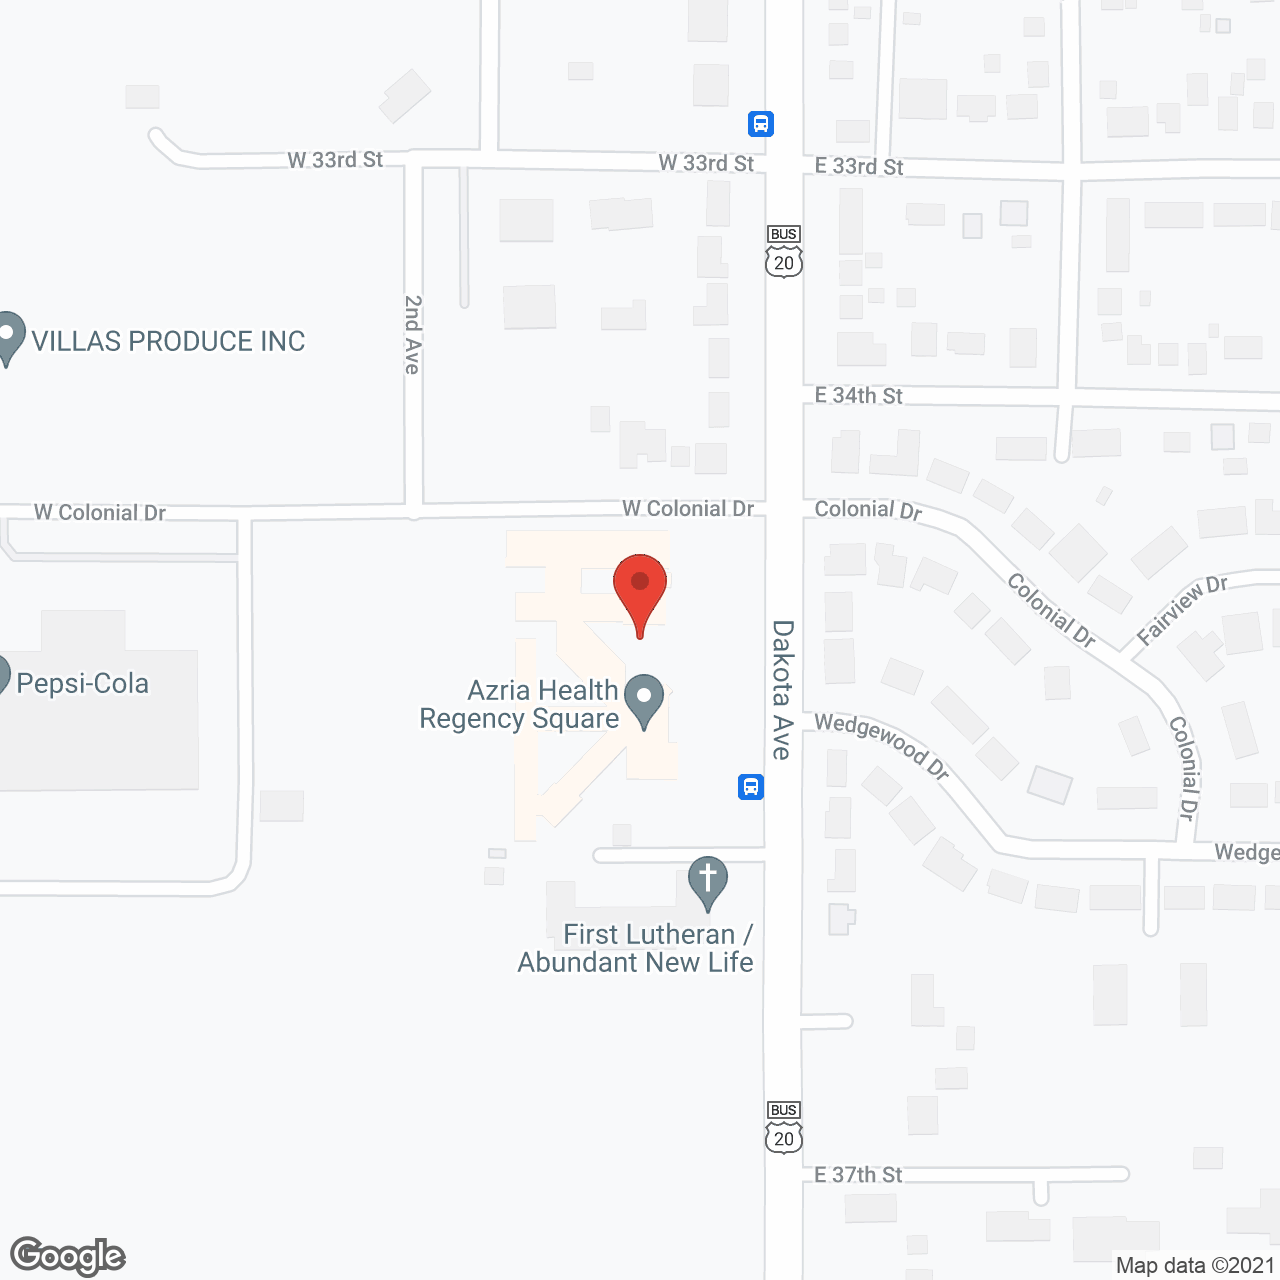 Regency Square in google map